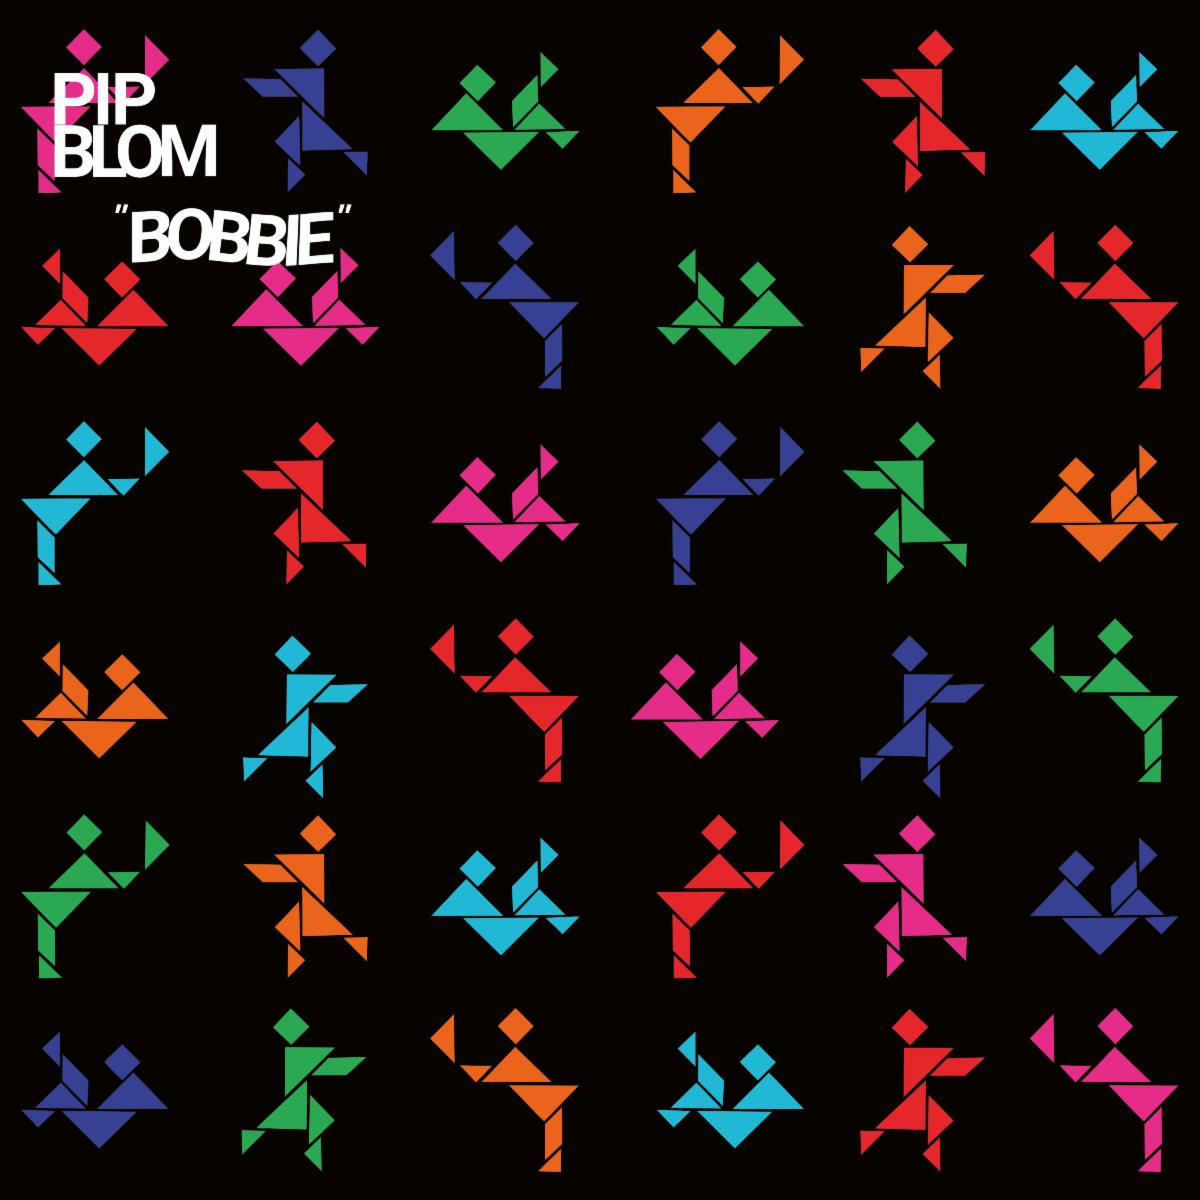 ALBUM REVIEW: Pip Blom - Bobbie